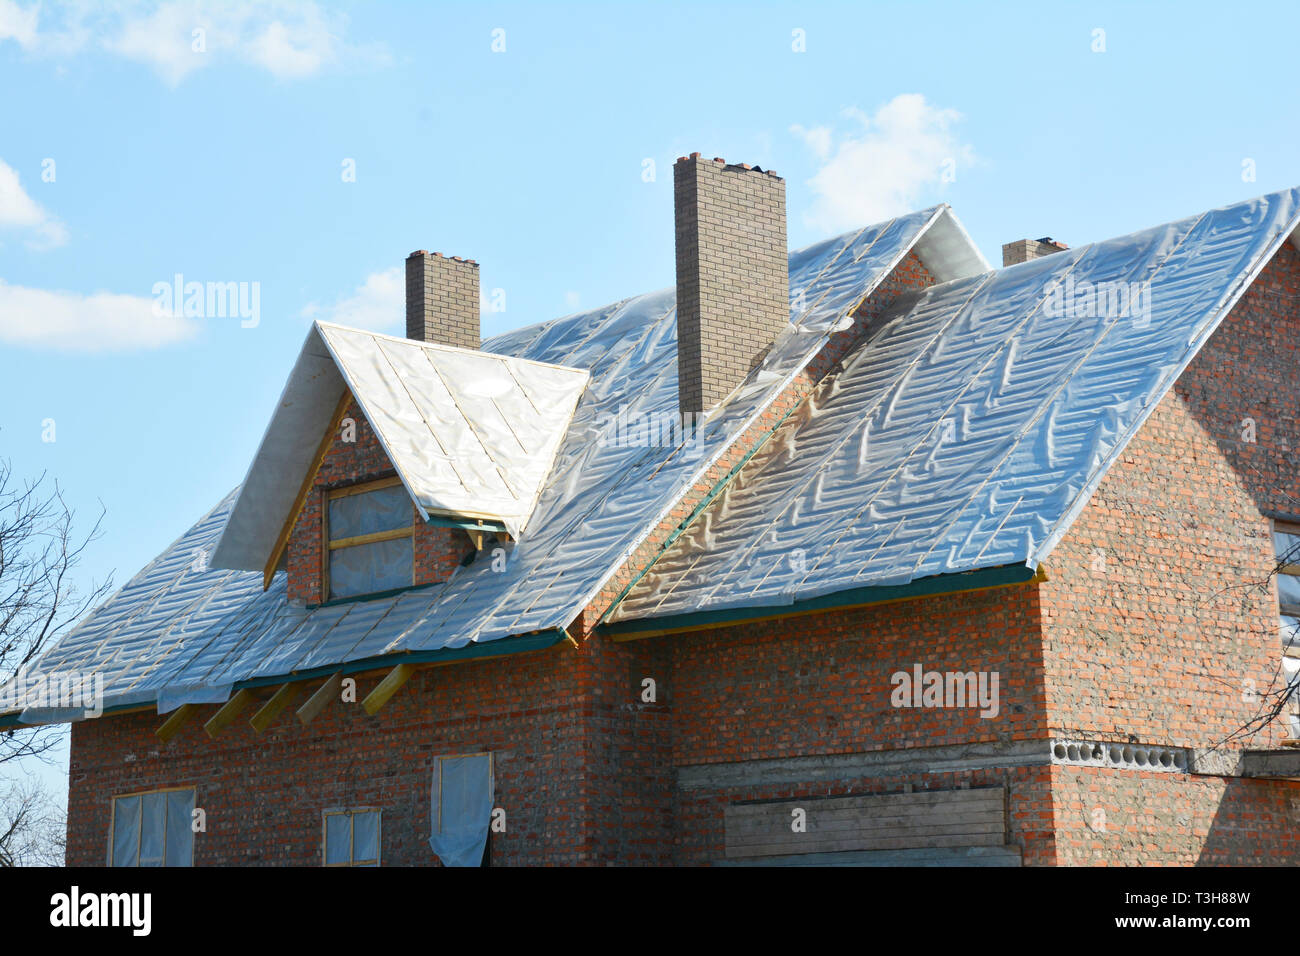 Le matériau de couverture étanche pour l'isolation thermique et d'étanchéité toiture chaude, et la membrane d'étanchéité du toit. Banque D'Images